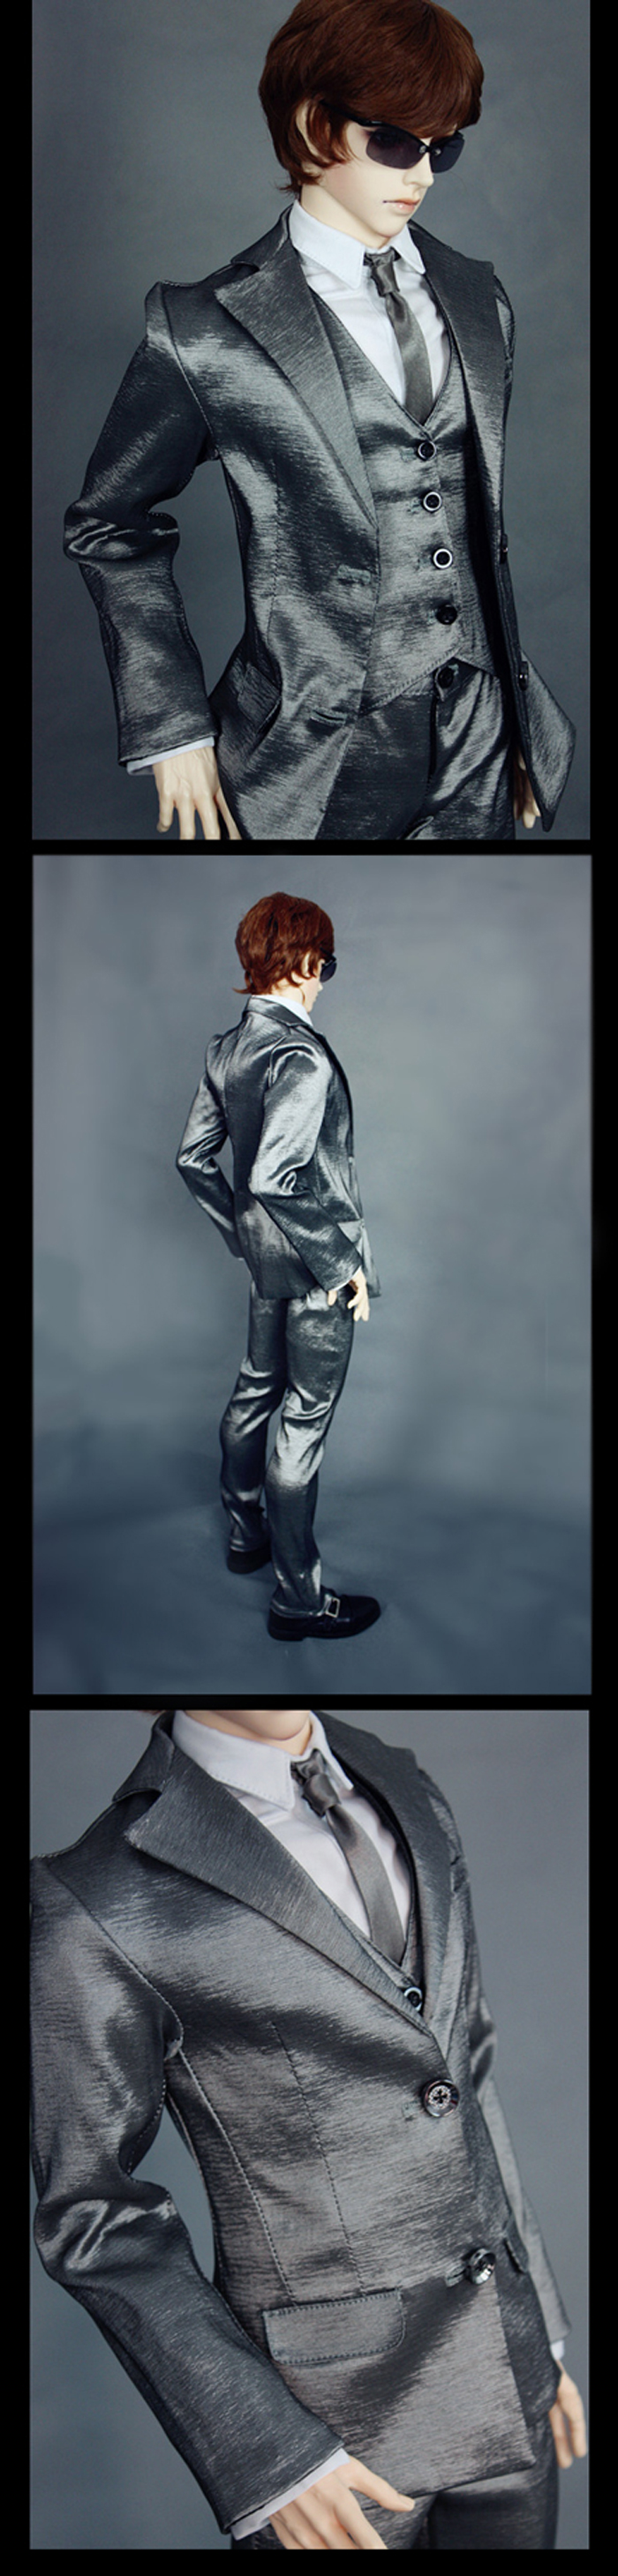 ドール衣装セット SOOM-ID/70cm/SD17/SD13/SD10サイズ人形用 Silver Suit for スーツセット